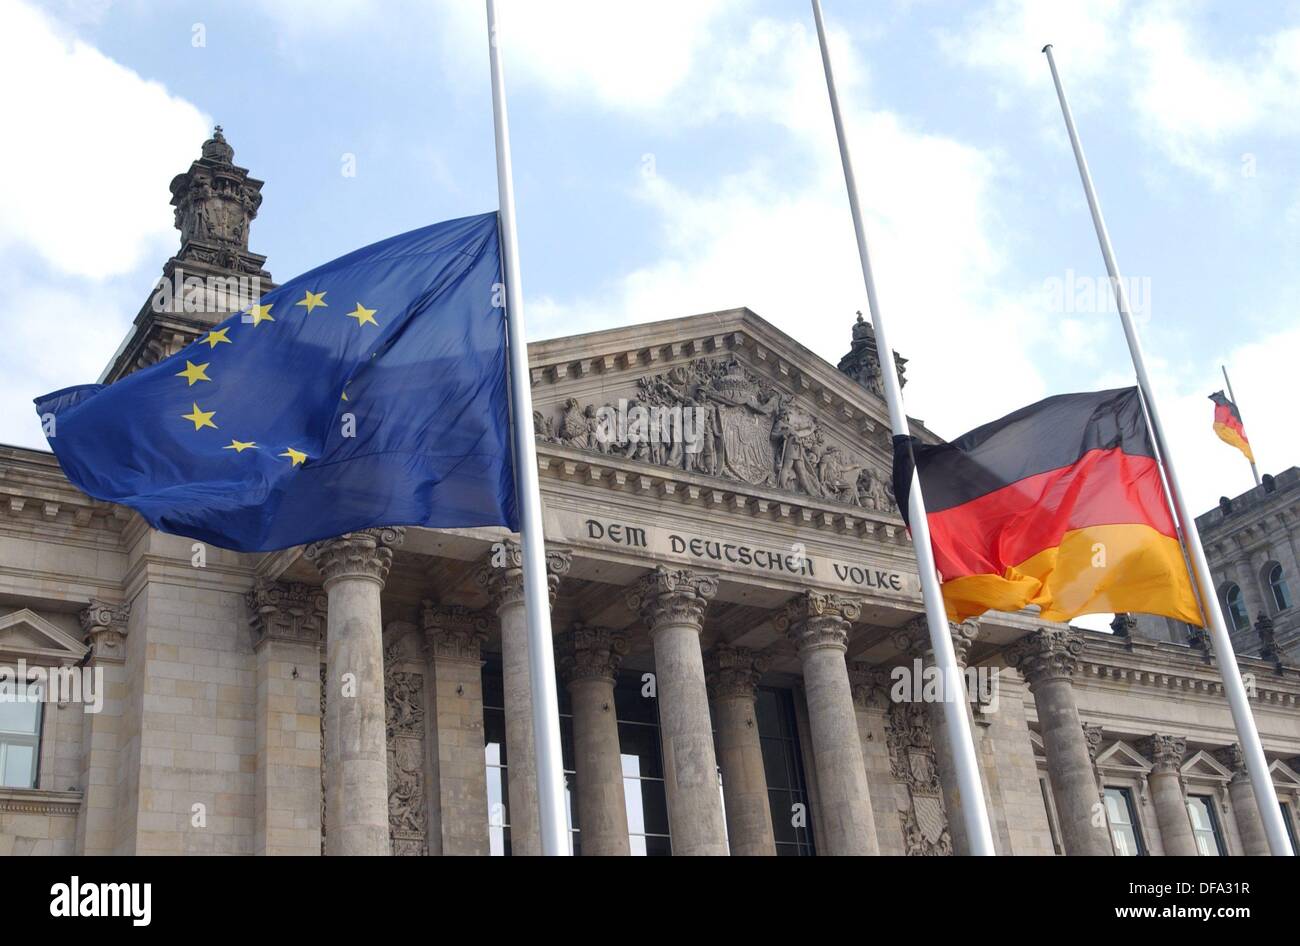 Bandiere di Berlino sono a halfmast sul dodicesimo di marzo nel 2004 a causa dell'attacco terroristico a Madrid il giorno prima. Foto Stock